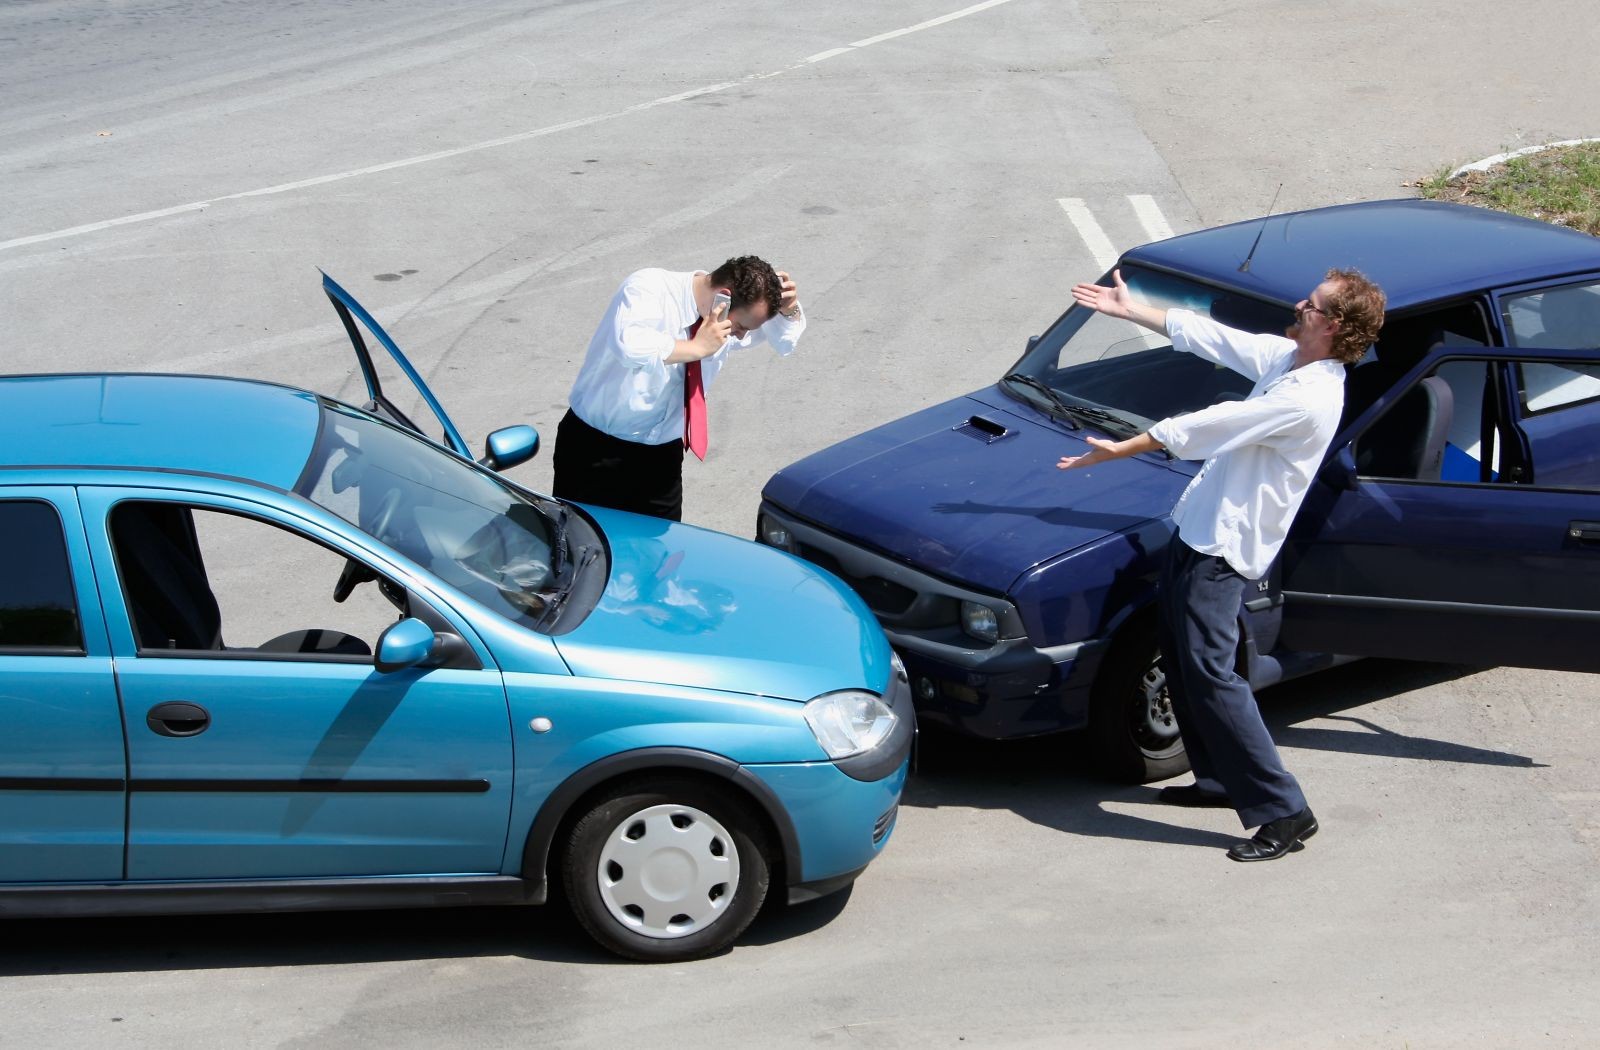 Va chạm xe với người mới là khó tránh khỏi. Vì vậy, bạn nên đăng ký bảo hiểm cho chiếc xe của mình.